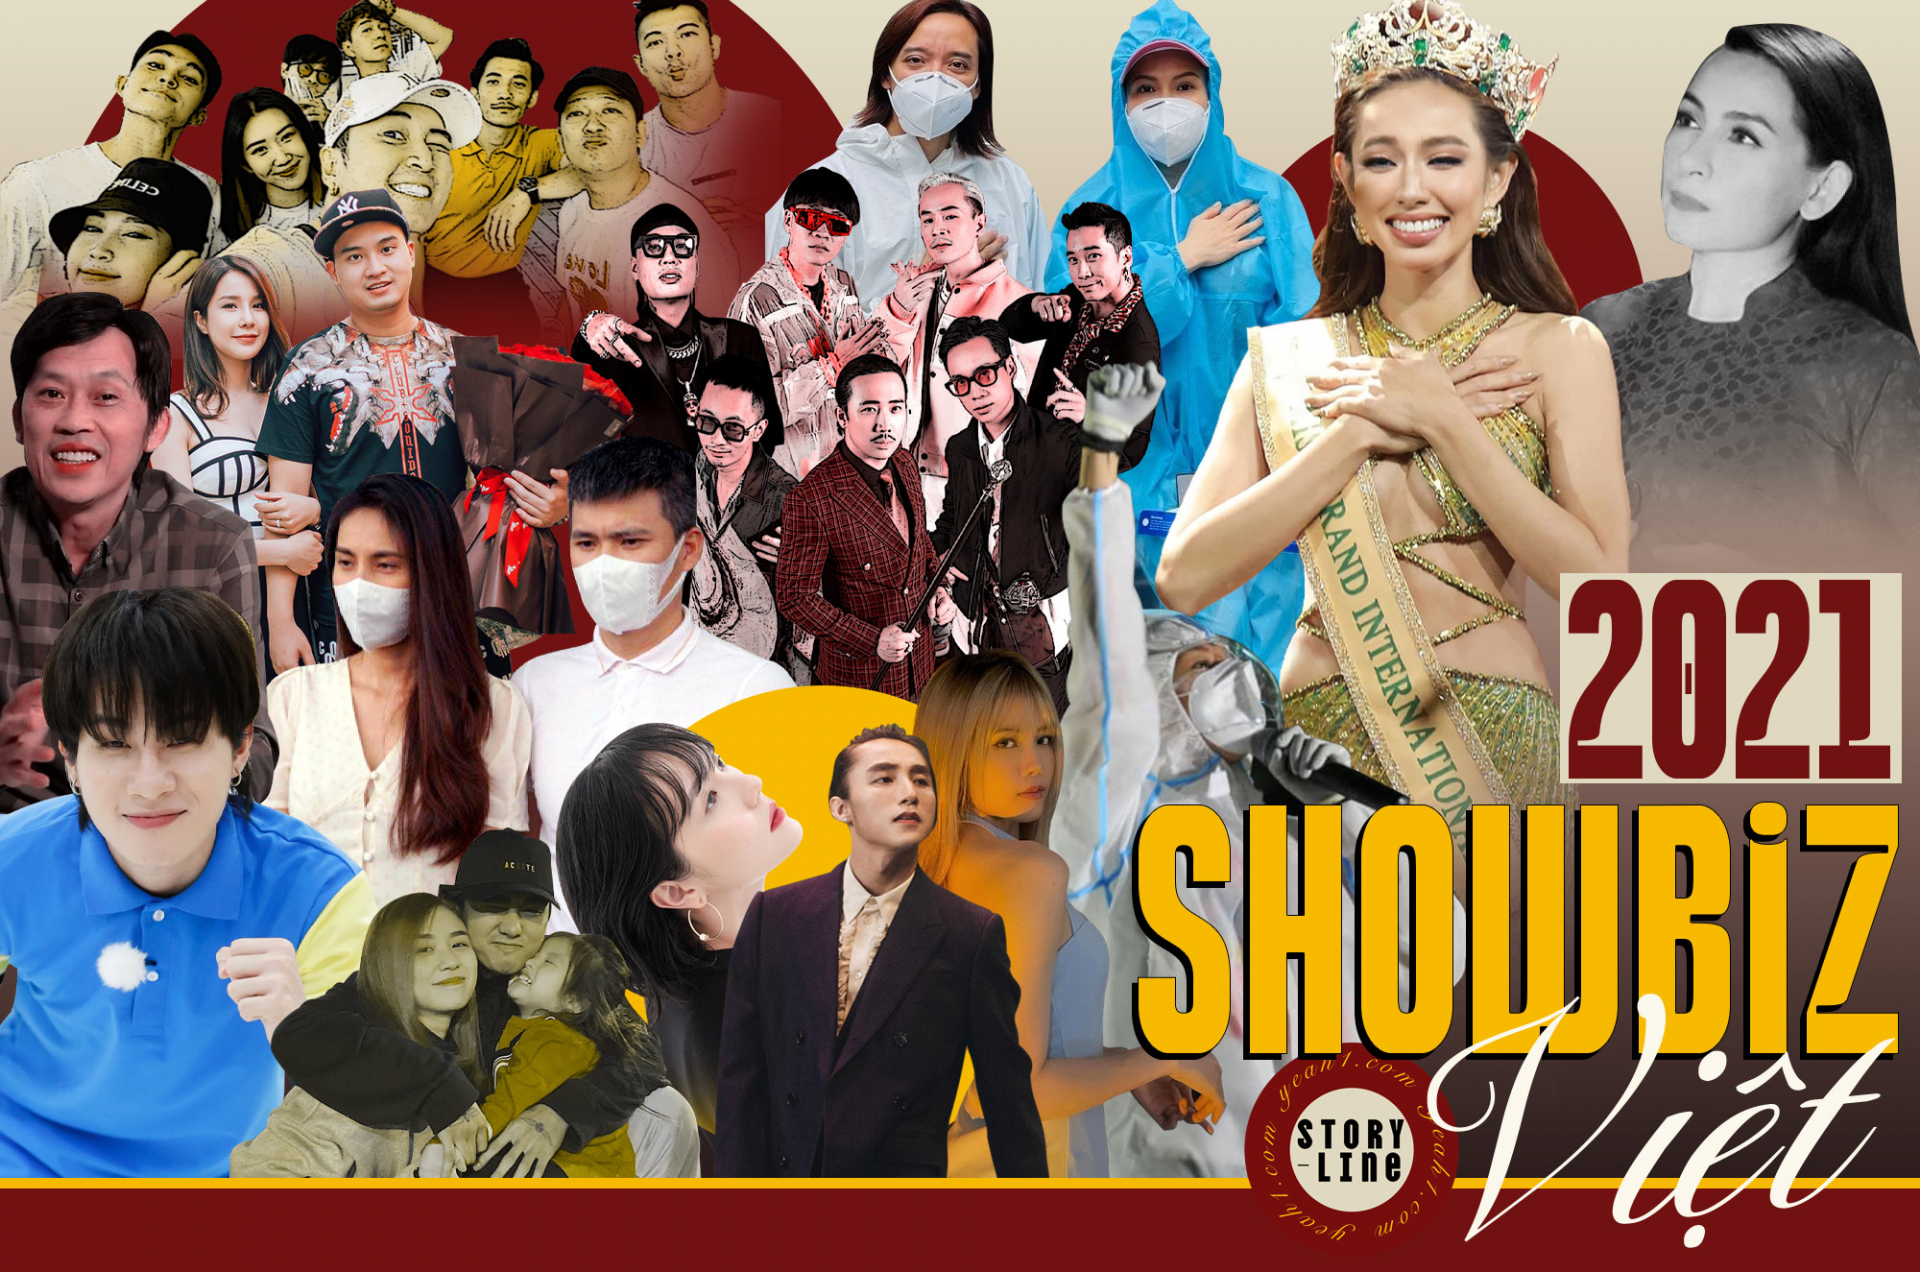 Nhìn lại Showbiz Việt năm 2021 - Một năm tai tiếng đình trệ!